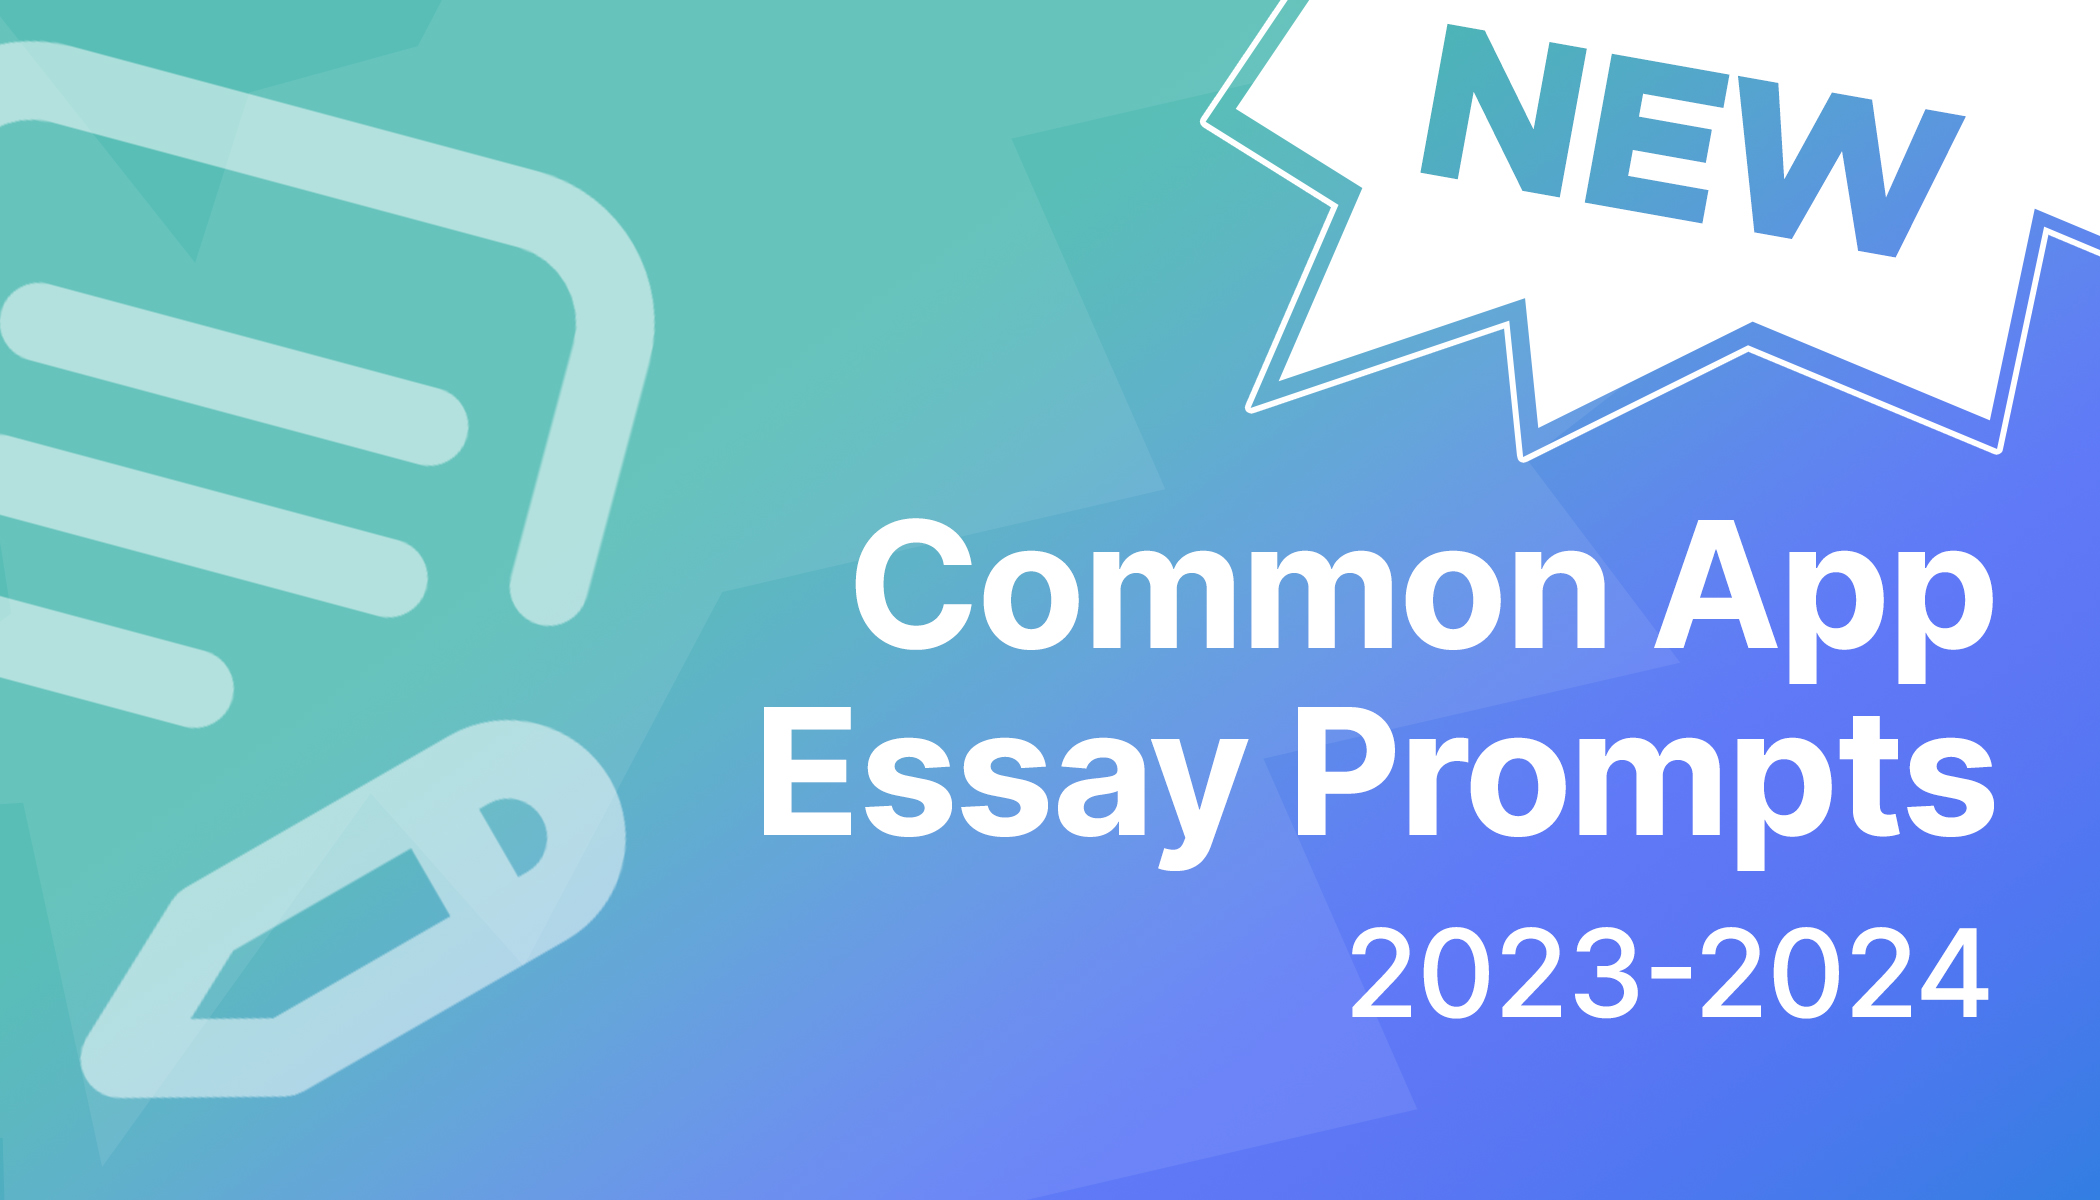 common app essay deadline 2023